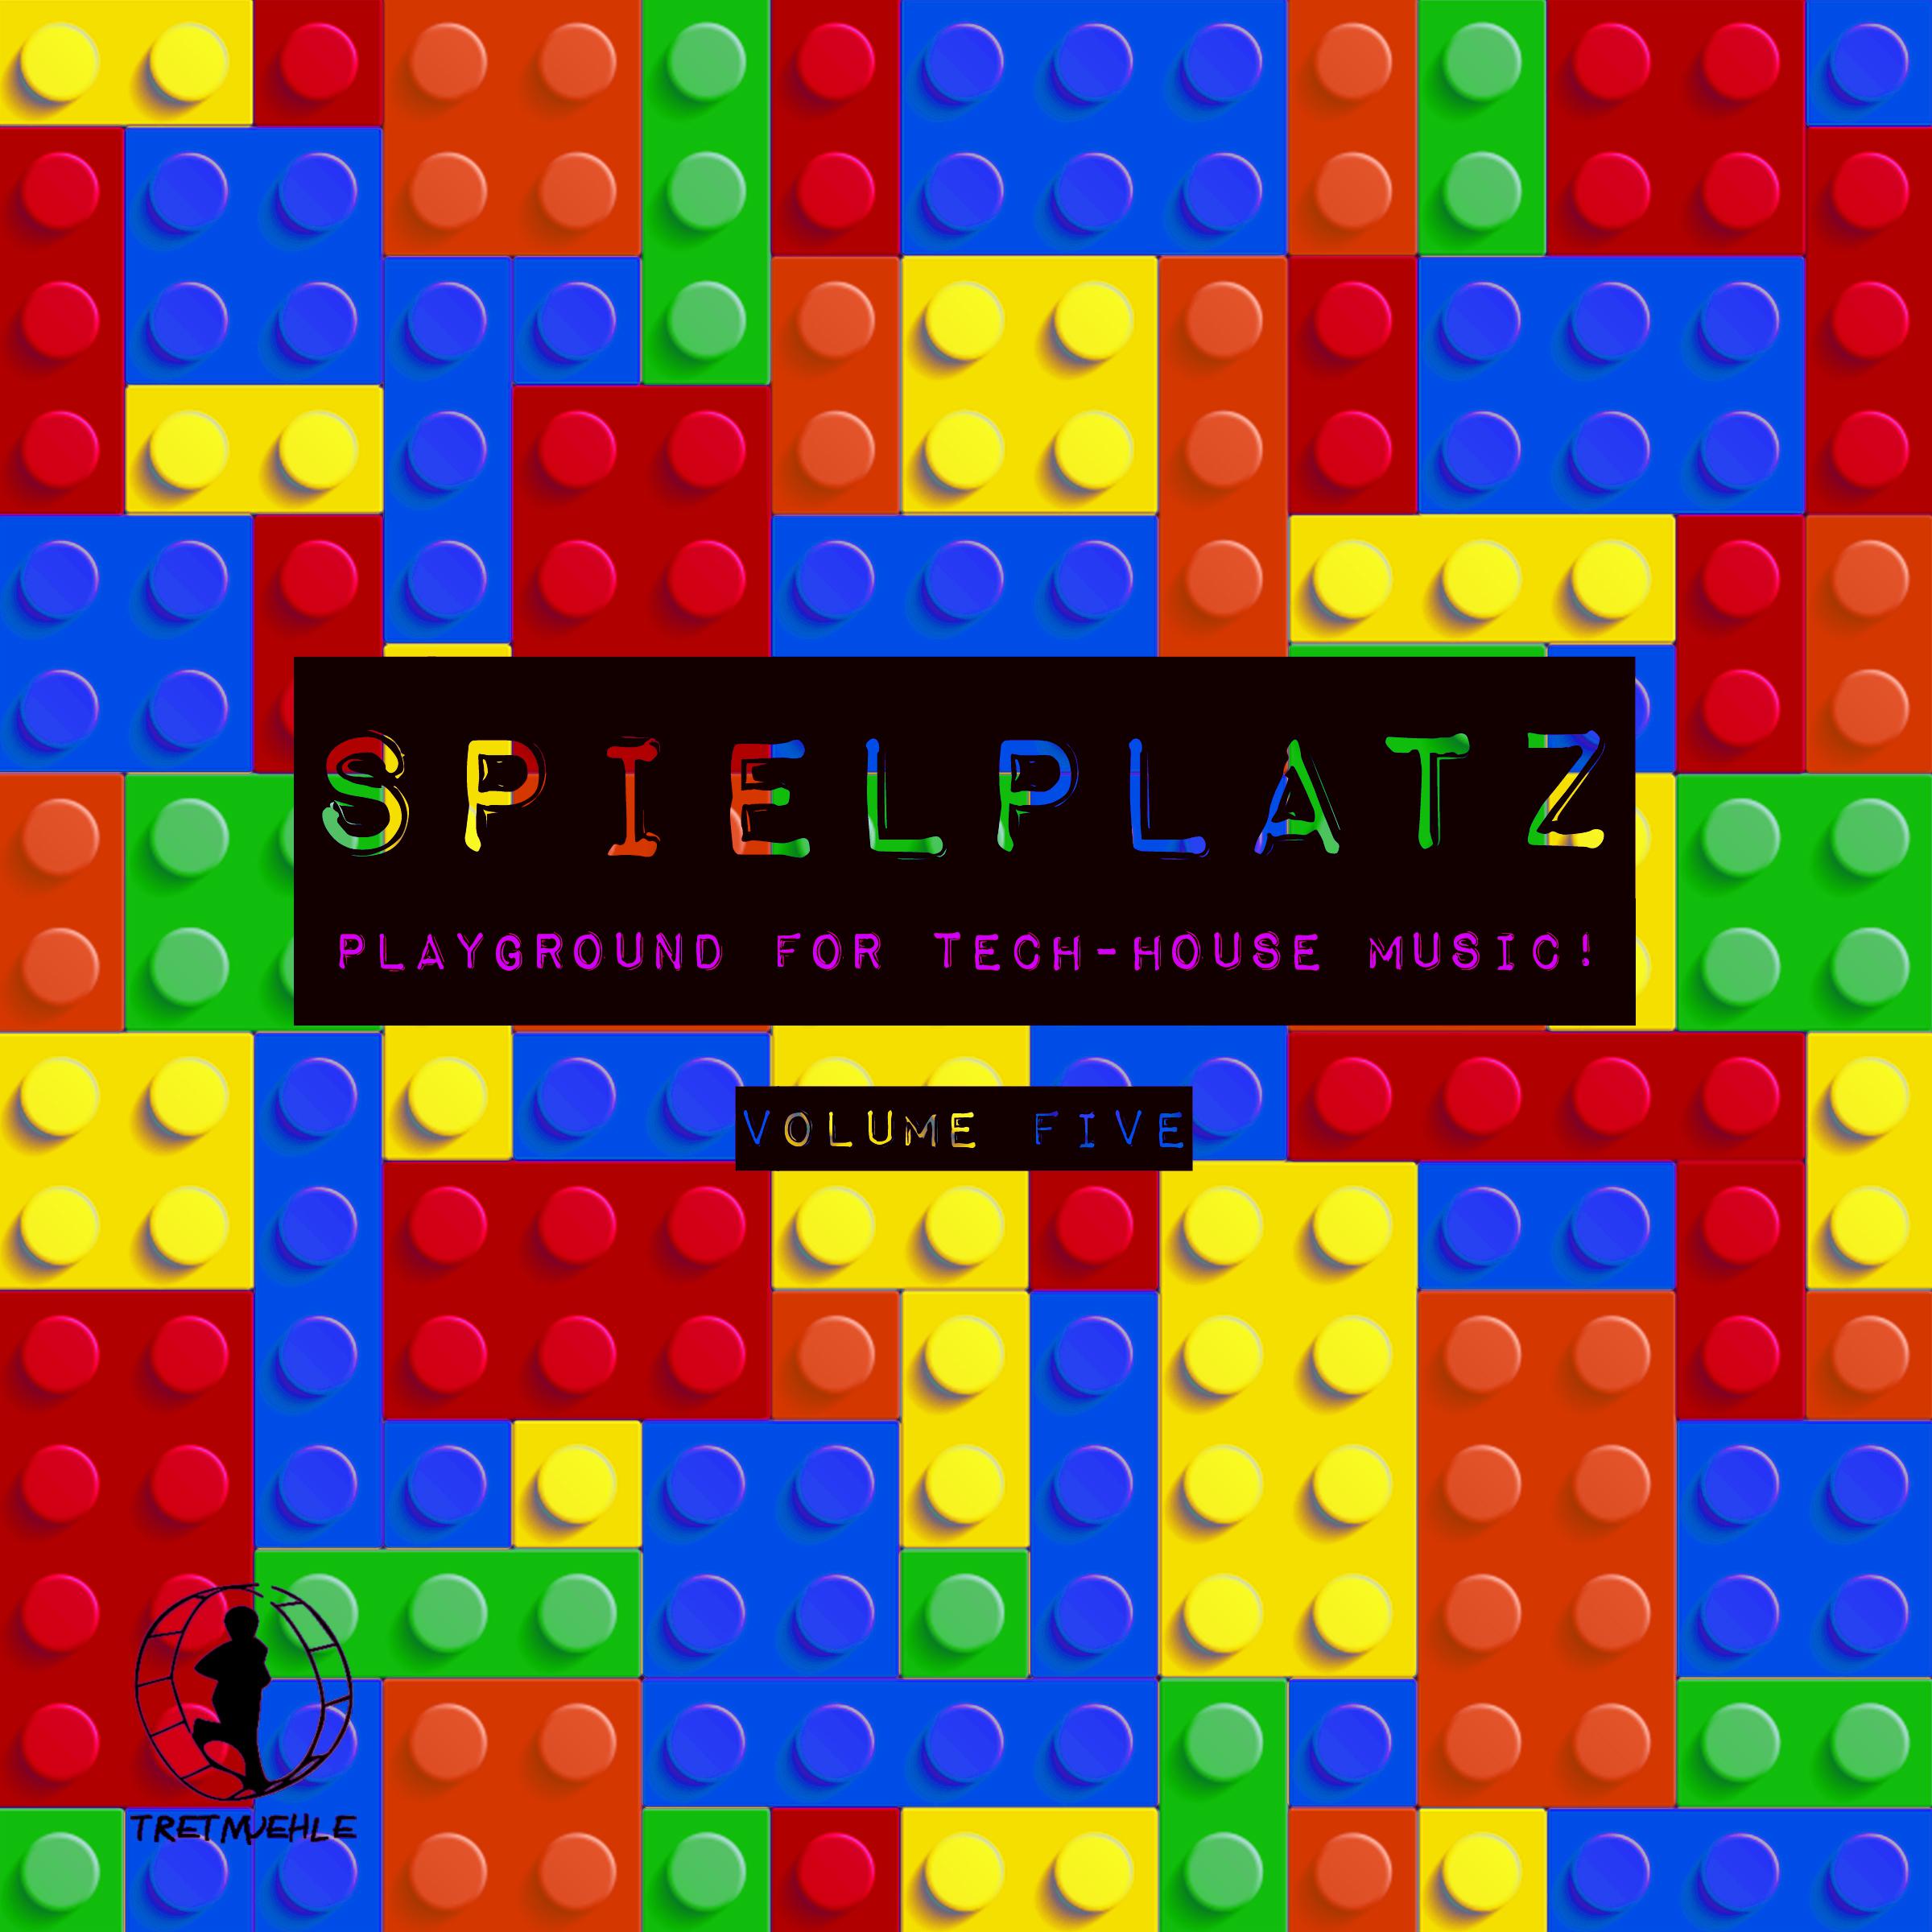 Spielplatz, Vol. 5 - Playground for Tech-House Music!